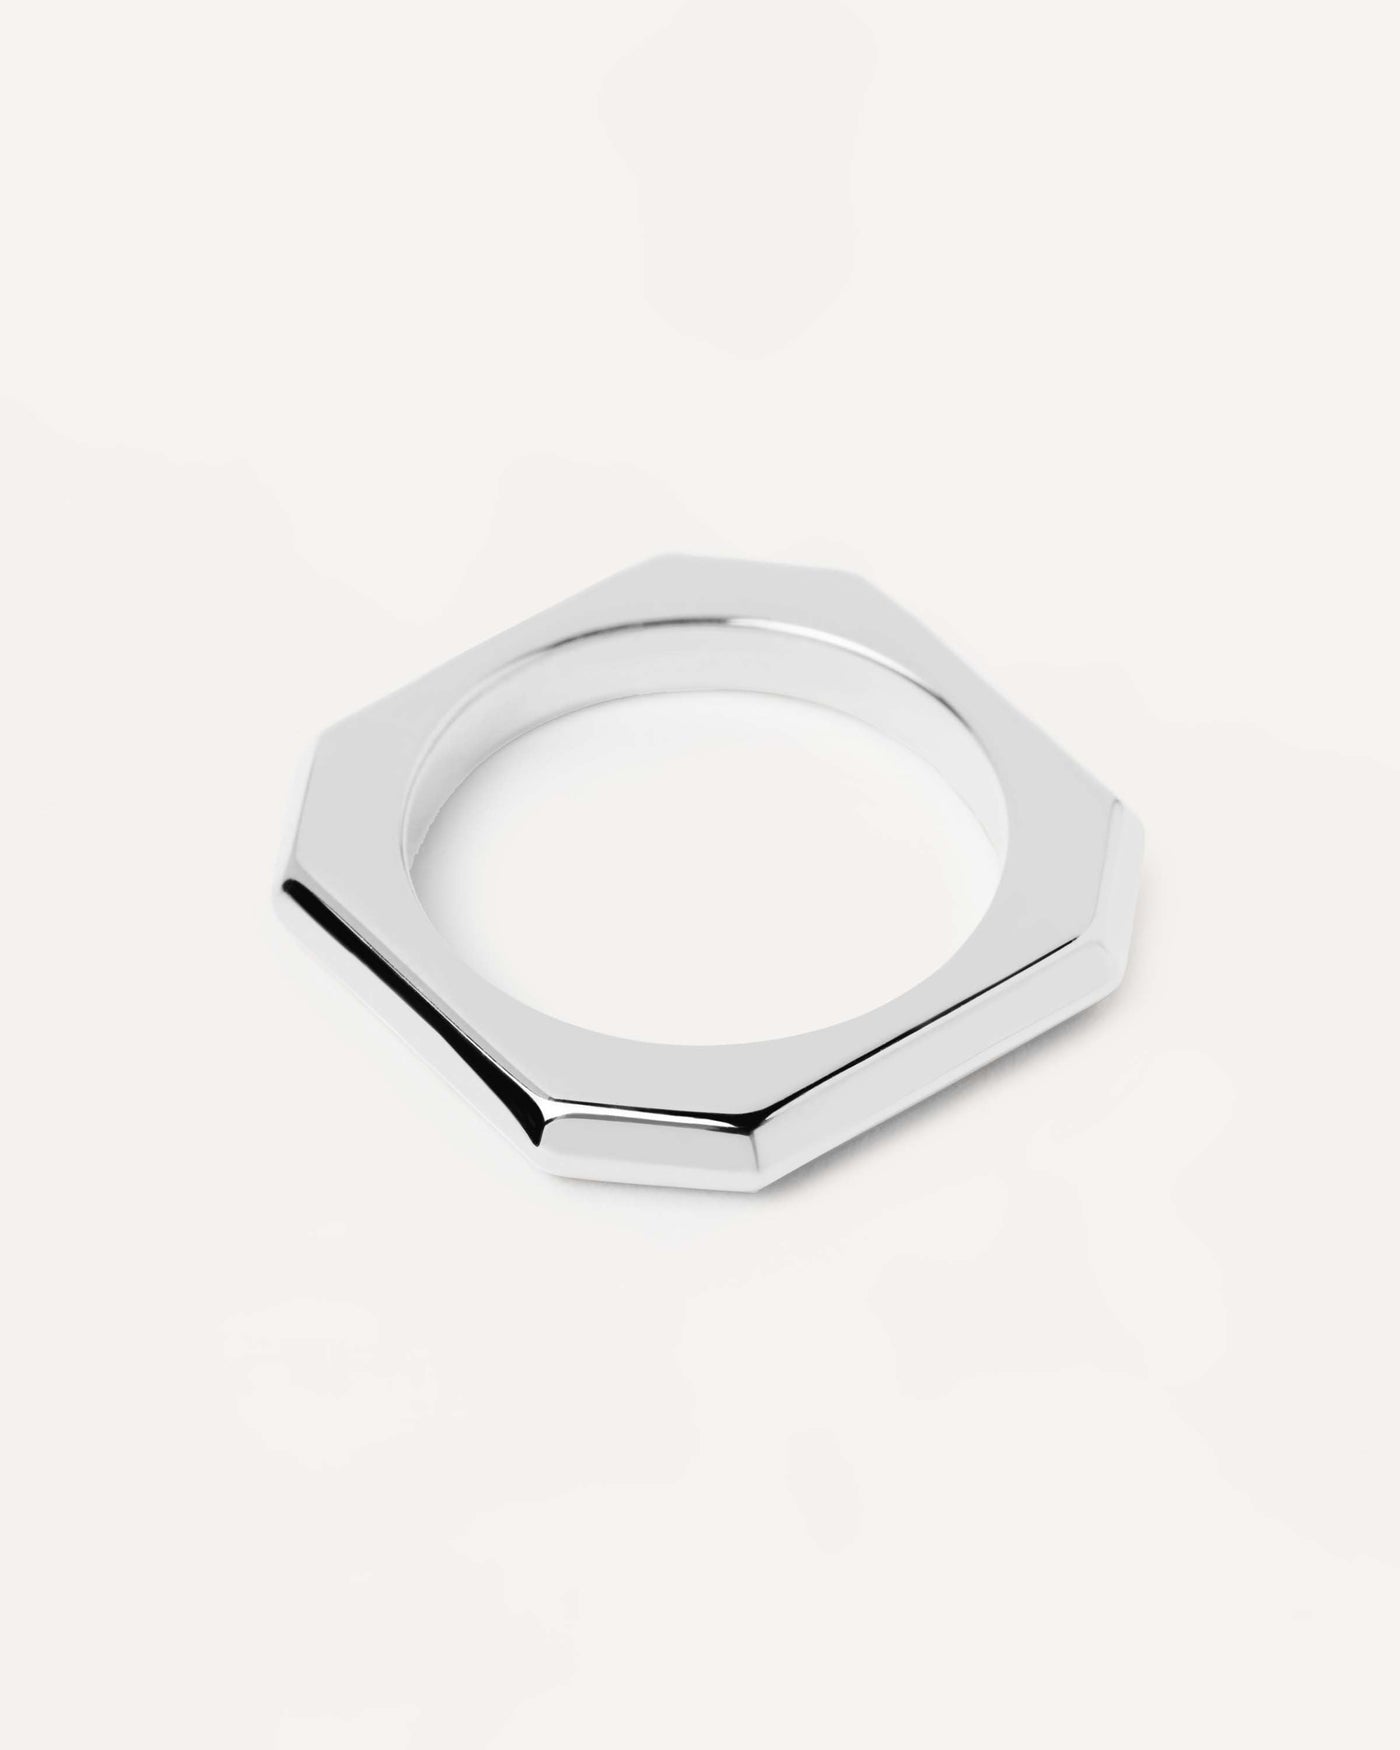 Signature Link Silberring. Oktogonaler einfacher Ring, der als Kabelverbindung in Silber -Rhodiumbeschichtung geformt ist. Erhalten Sie die neuesten Produkte von PDPAOLA. Geben Sie Ihre Bestellung sicher auf und erhalten Sie diesen Bestseller.